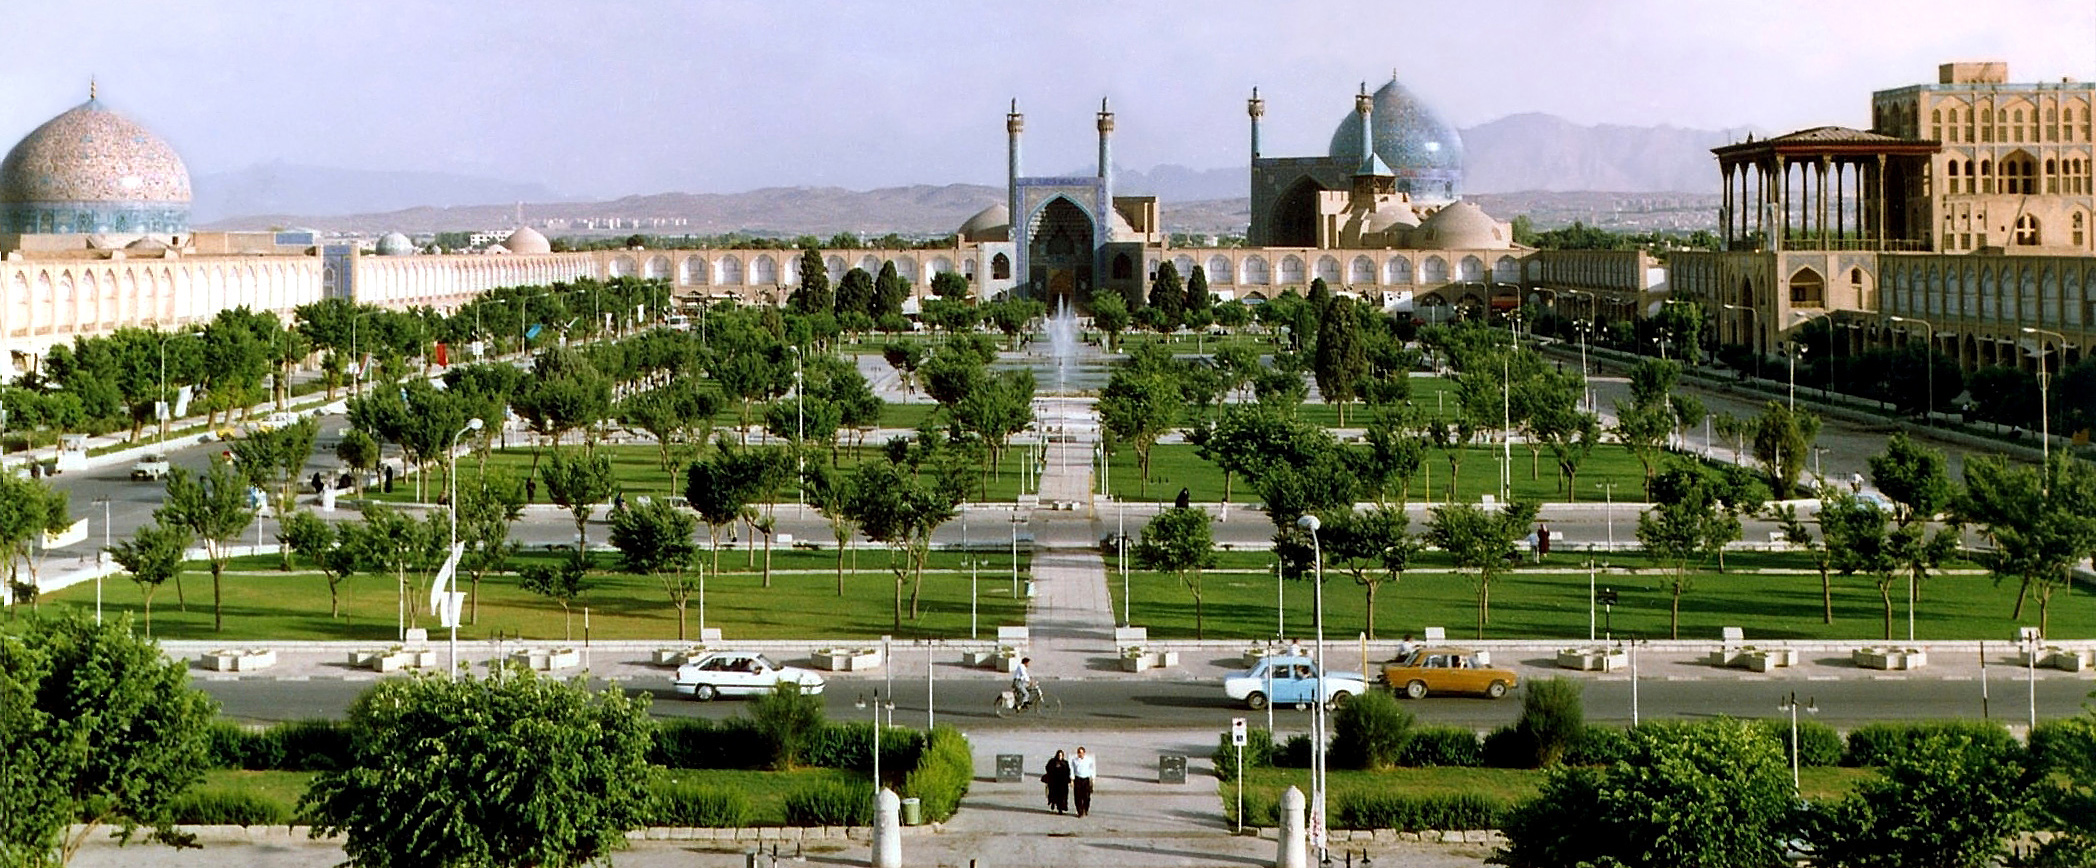 طالع اصفهان در «قوس» افتاد